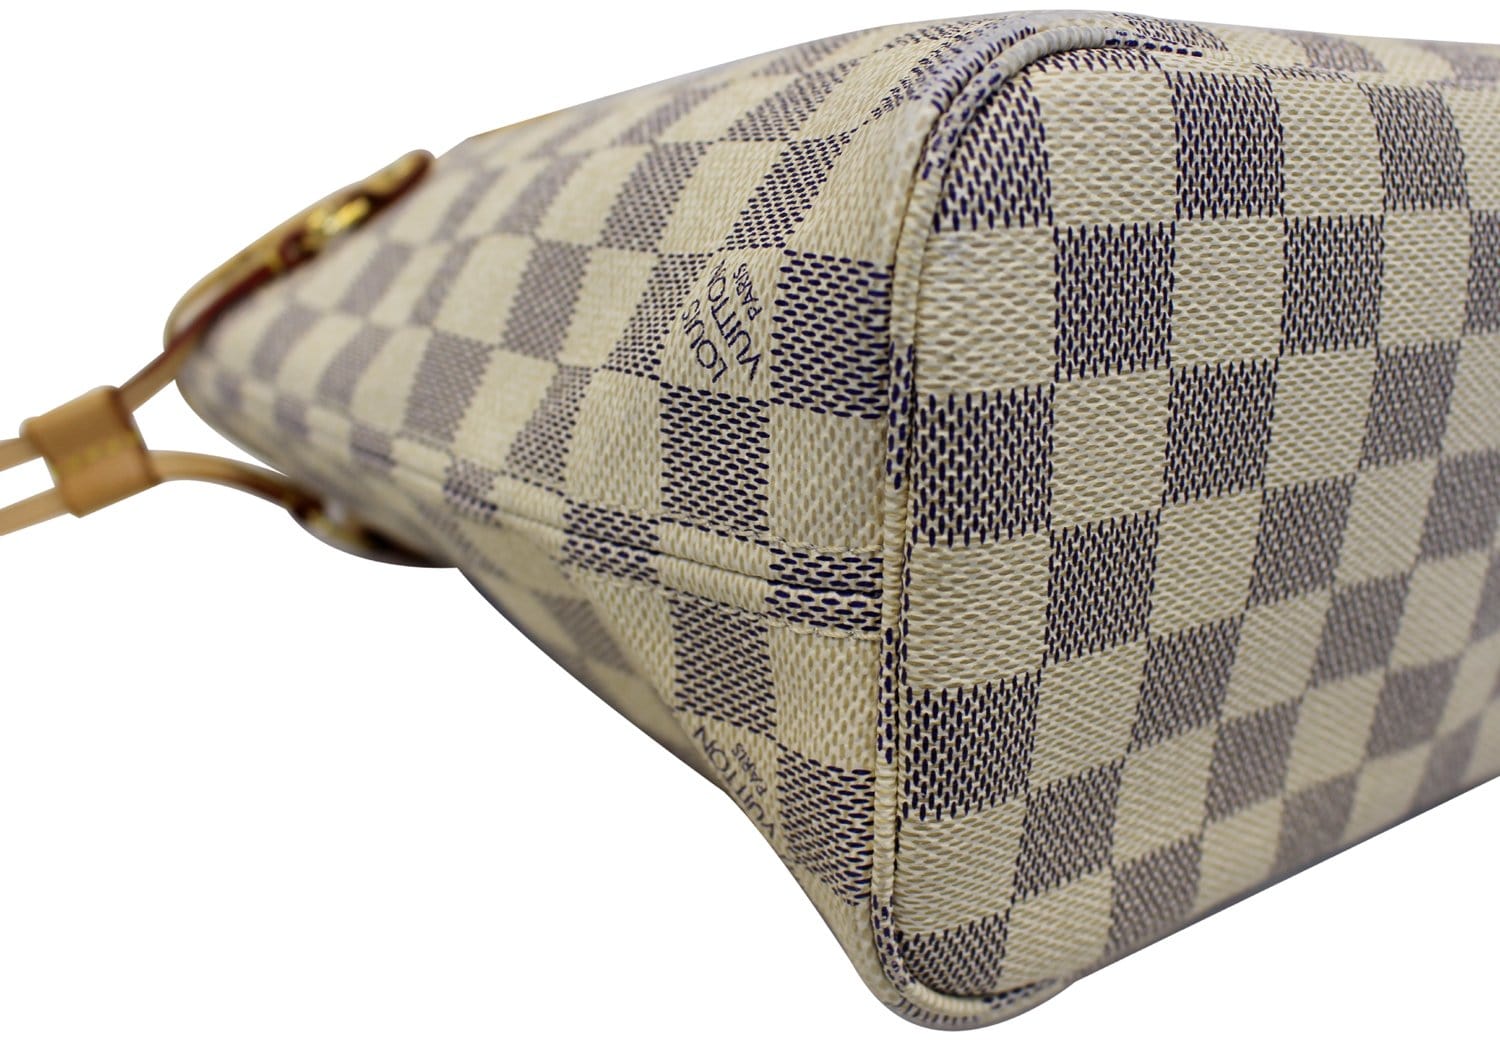 Louis Vuitton Damien Azur Tote Bag Pampelonne GM(large size) Beige